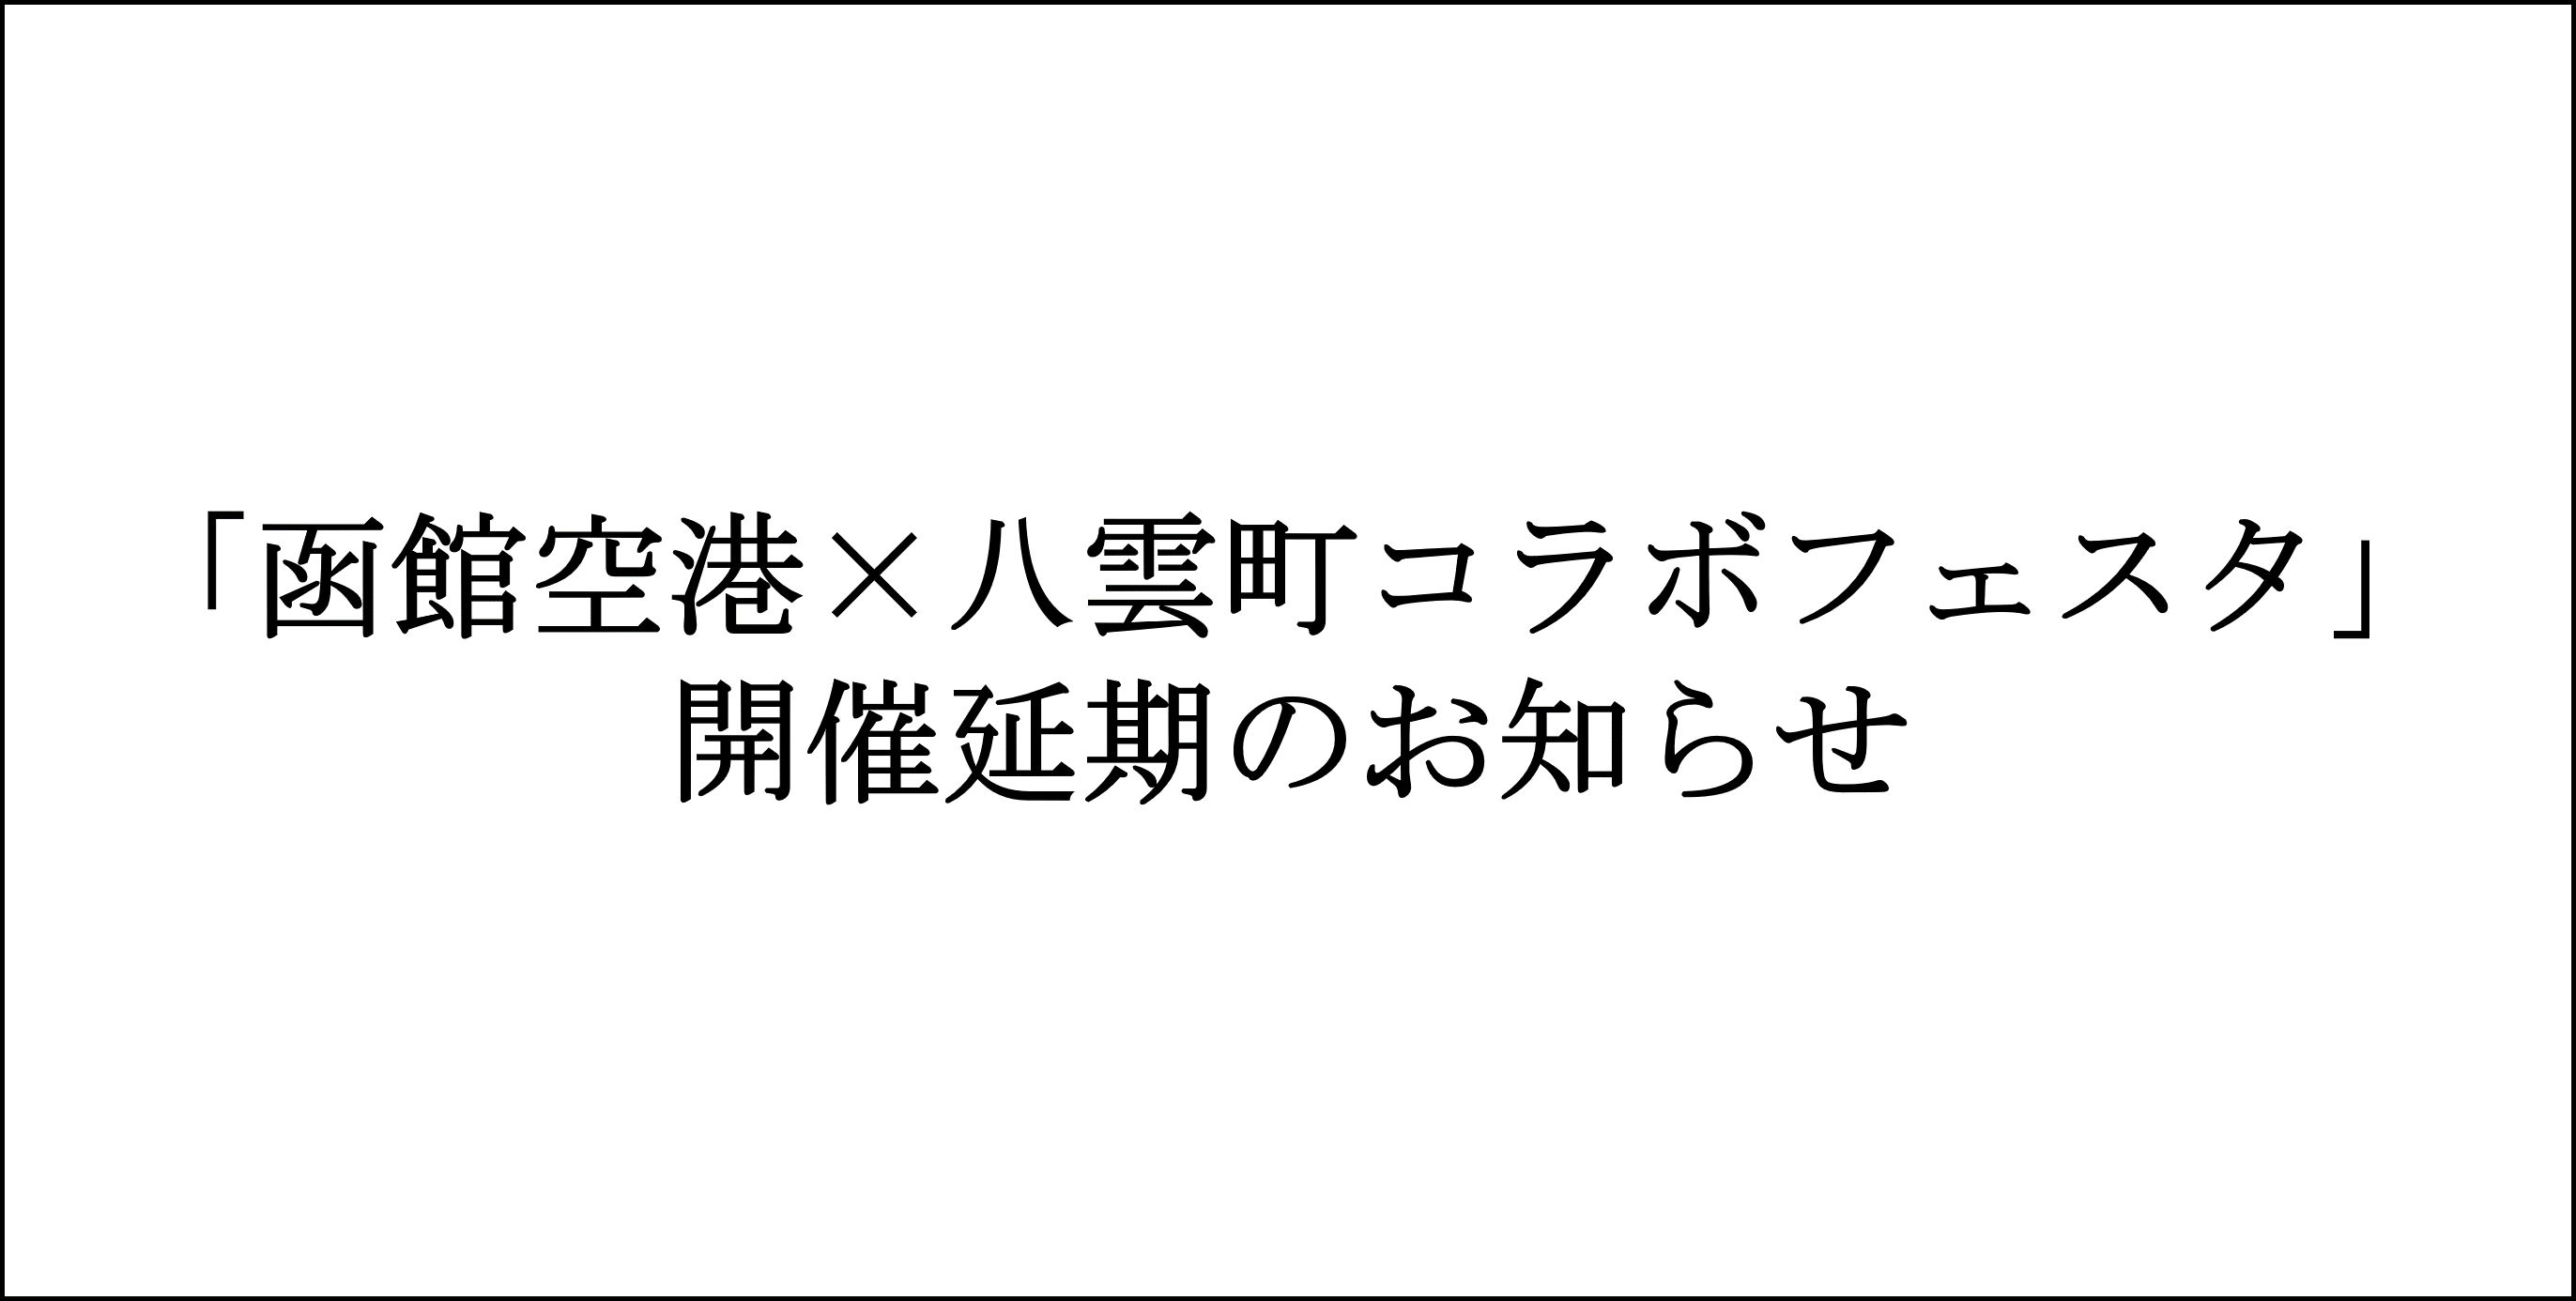 「函館空港×八雲町コラボフェスタ」開催延期のお知らせ